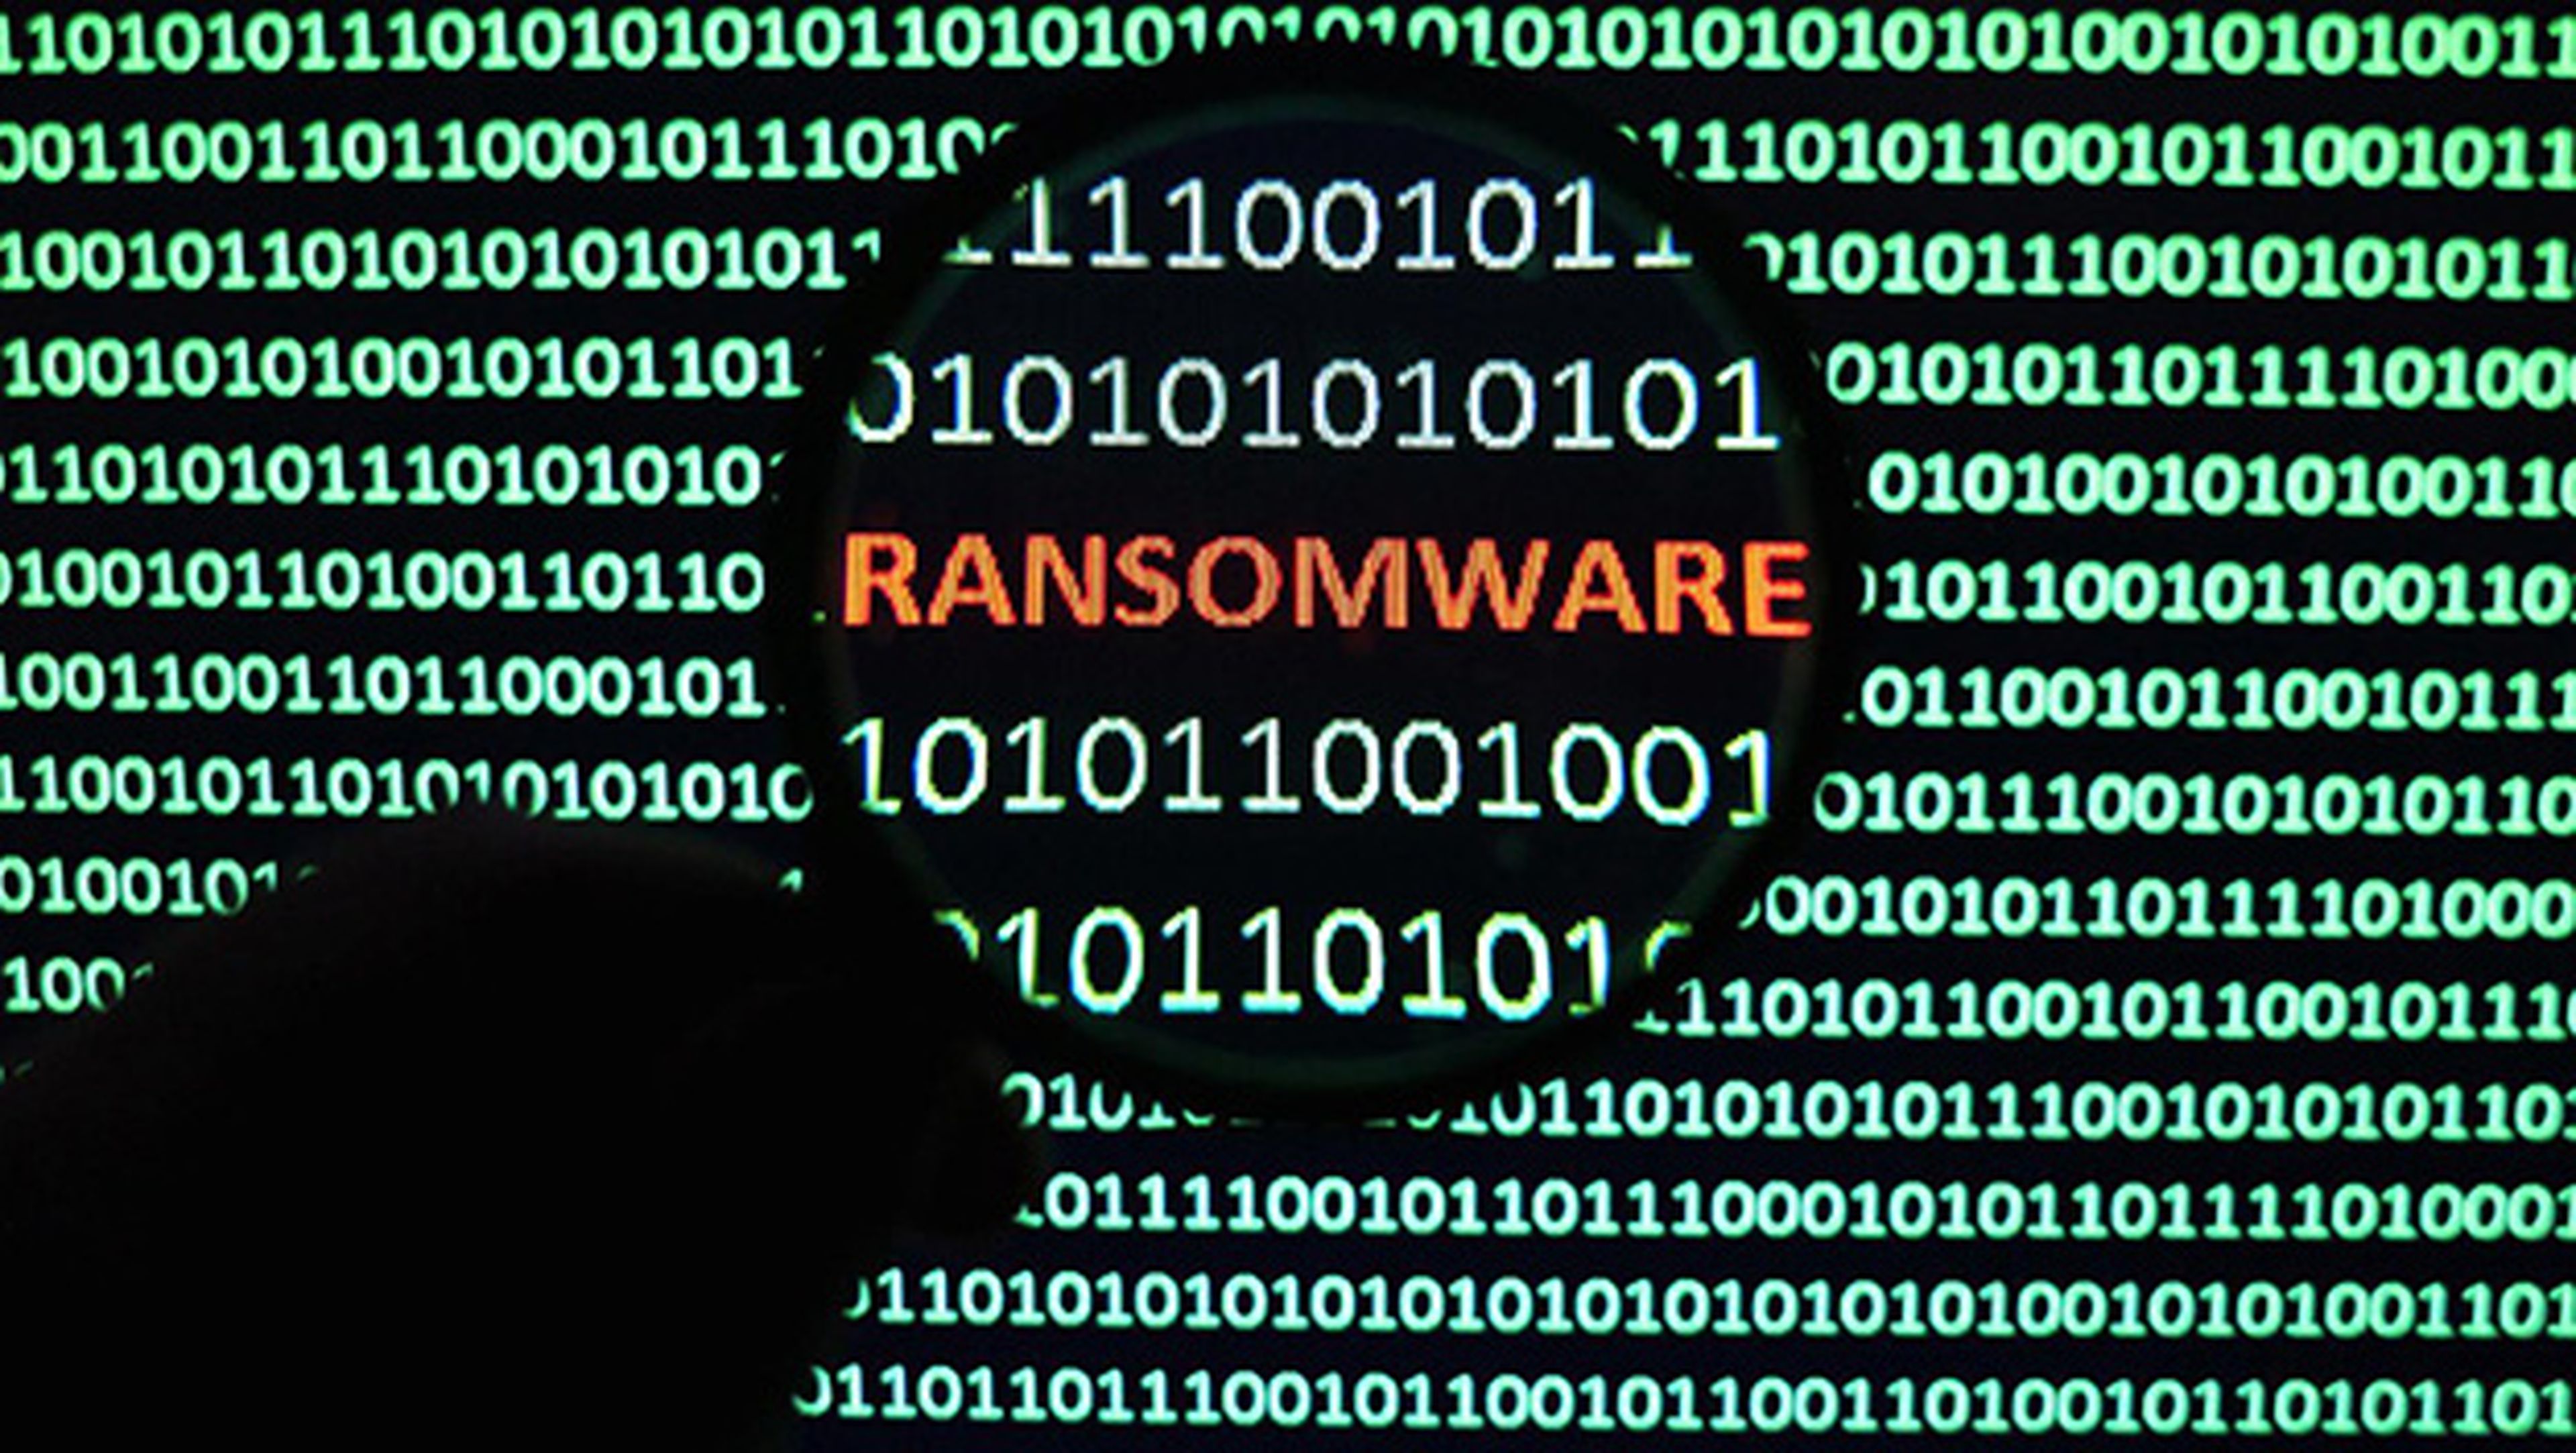 Un ransomware pone en jaque a Atlanta